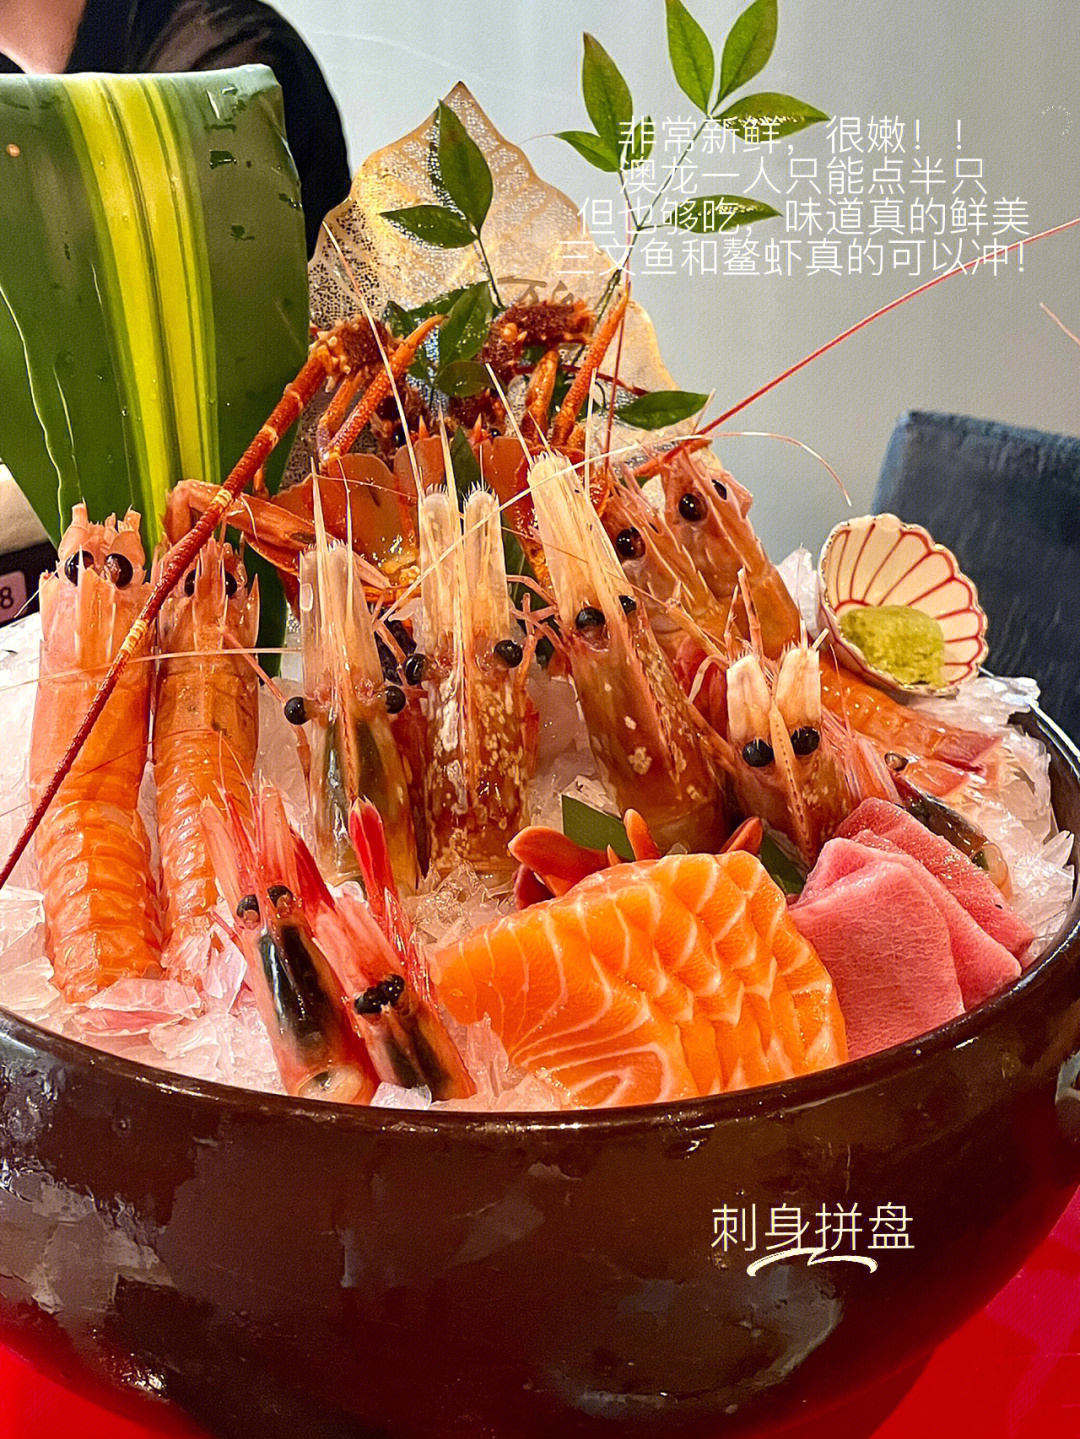 上海探店万岛自助式日本料理铁板烧